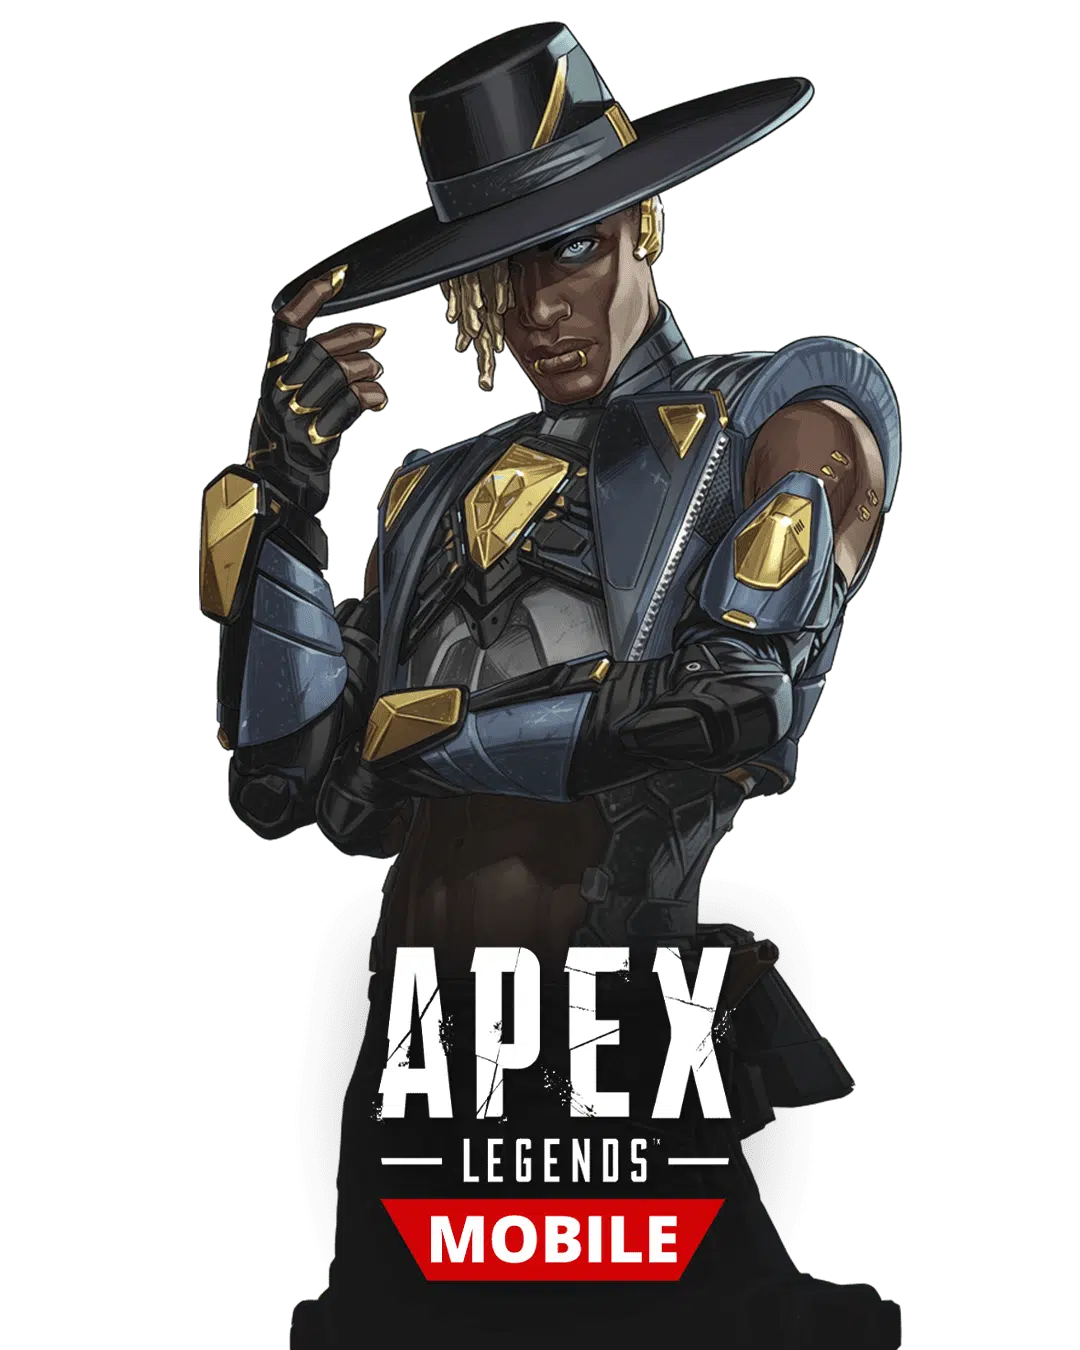 Apex Legend